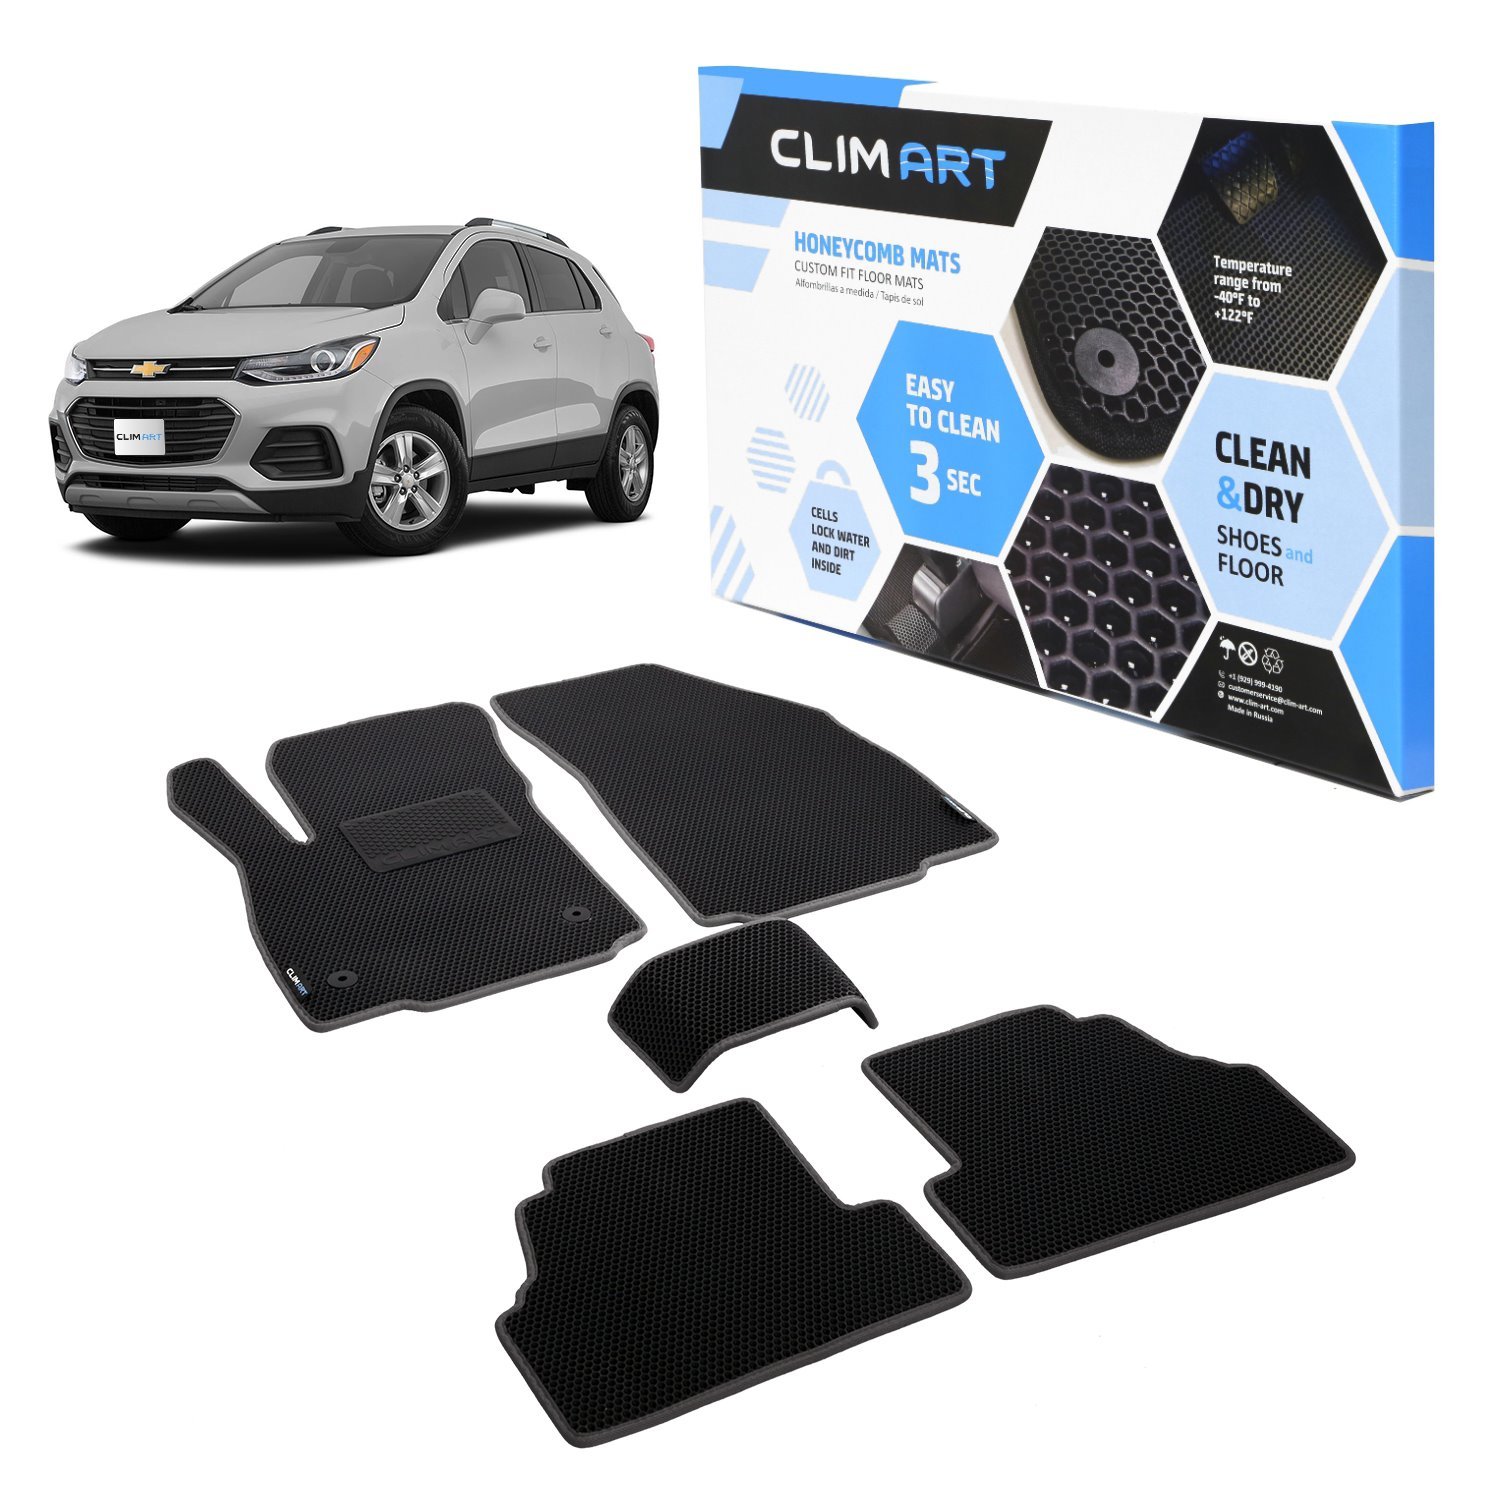 CLIM ART Honeycomb Custom Fit Floor Mats Fits Select Chevrolet Trax